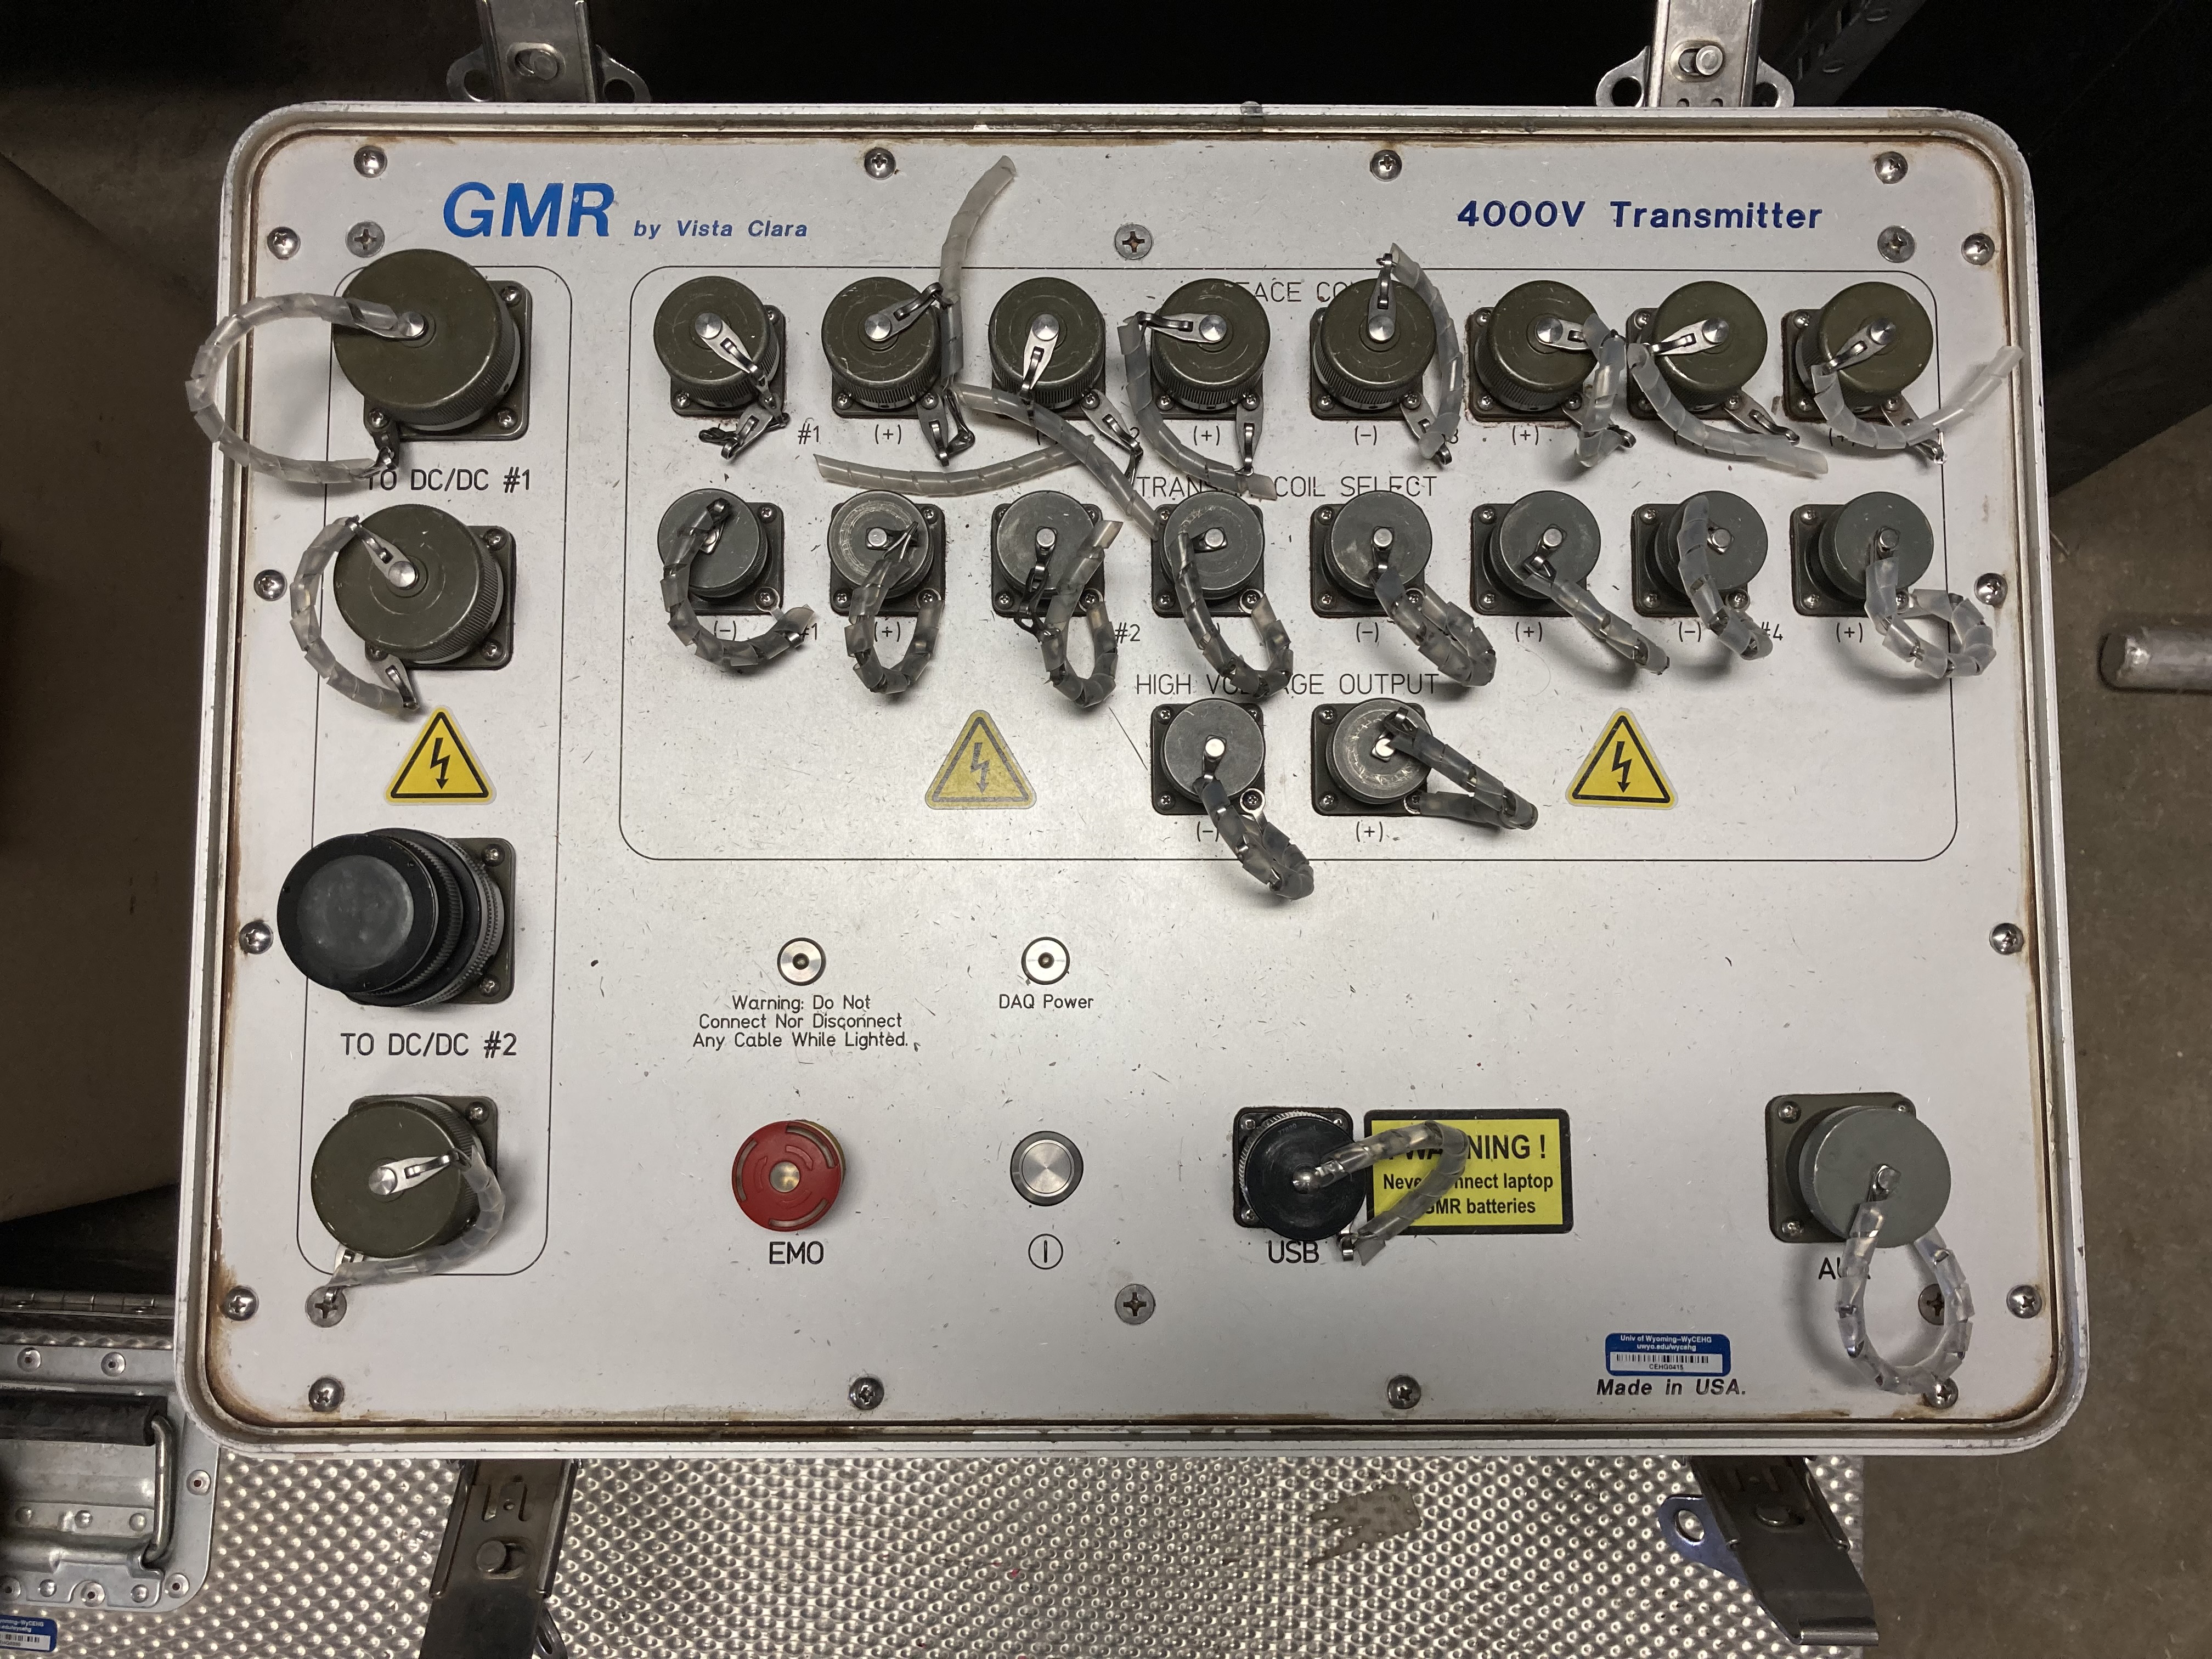 GMR transmitter